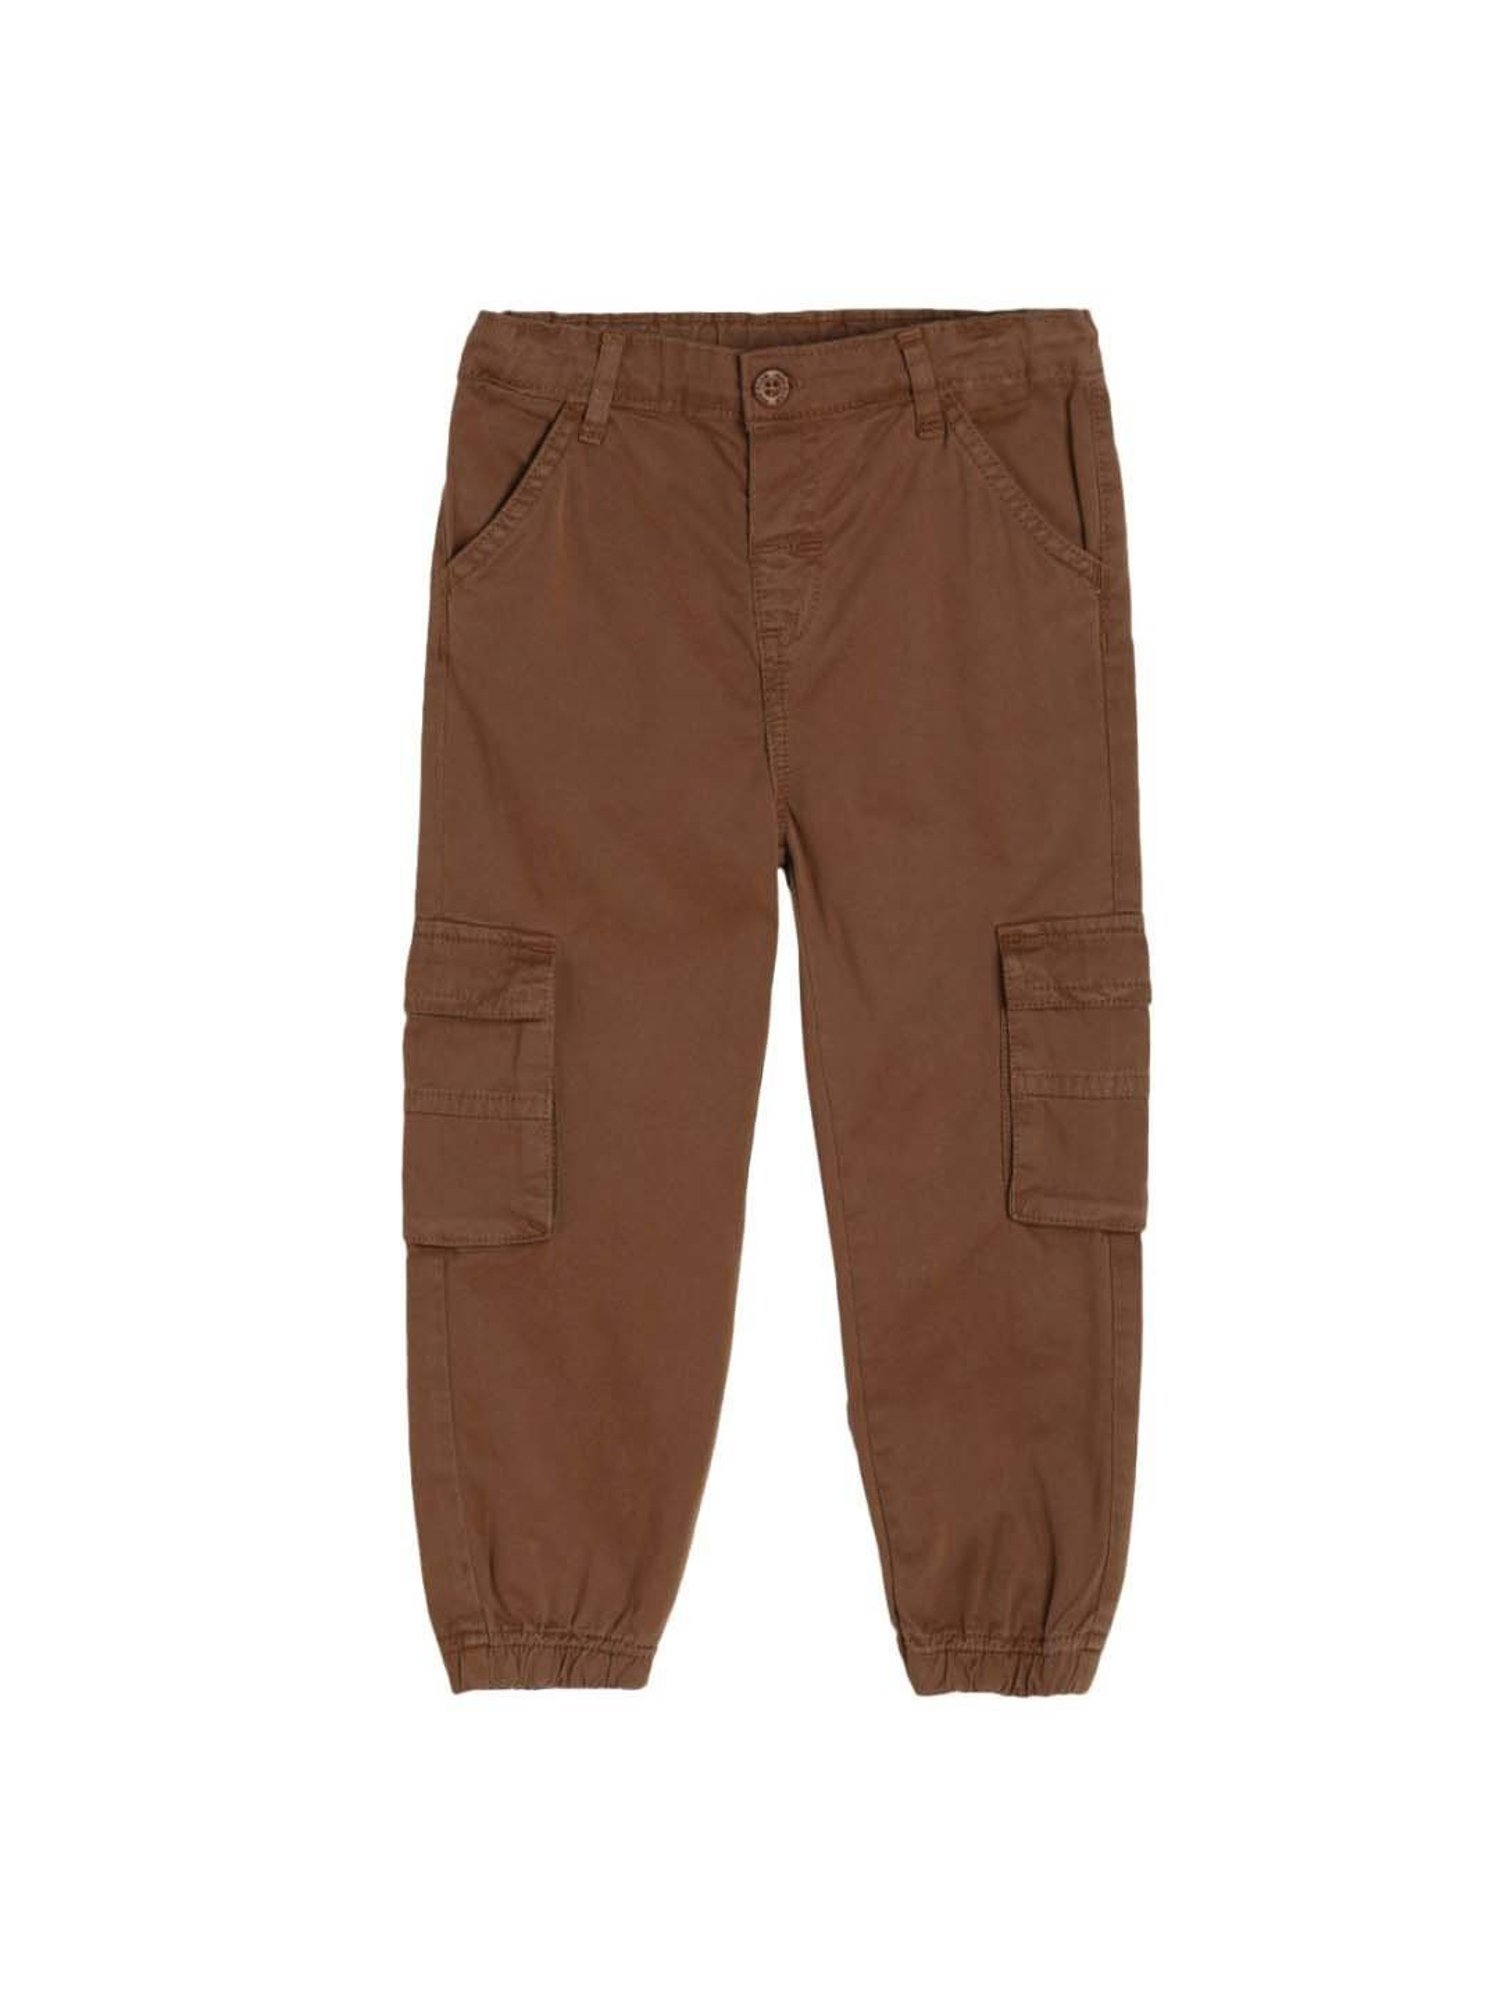 50 OFF on Posh Kids Brown Pants For Boys on Snapdeal  PaisaWapascom